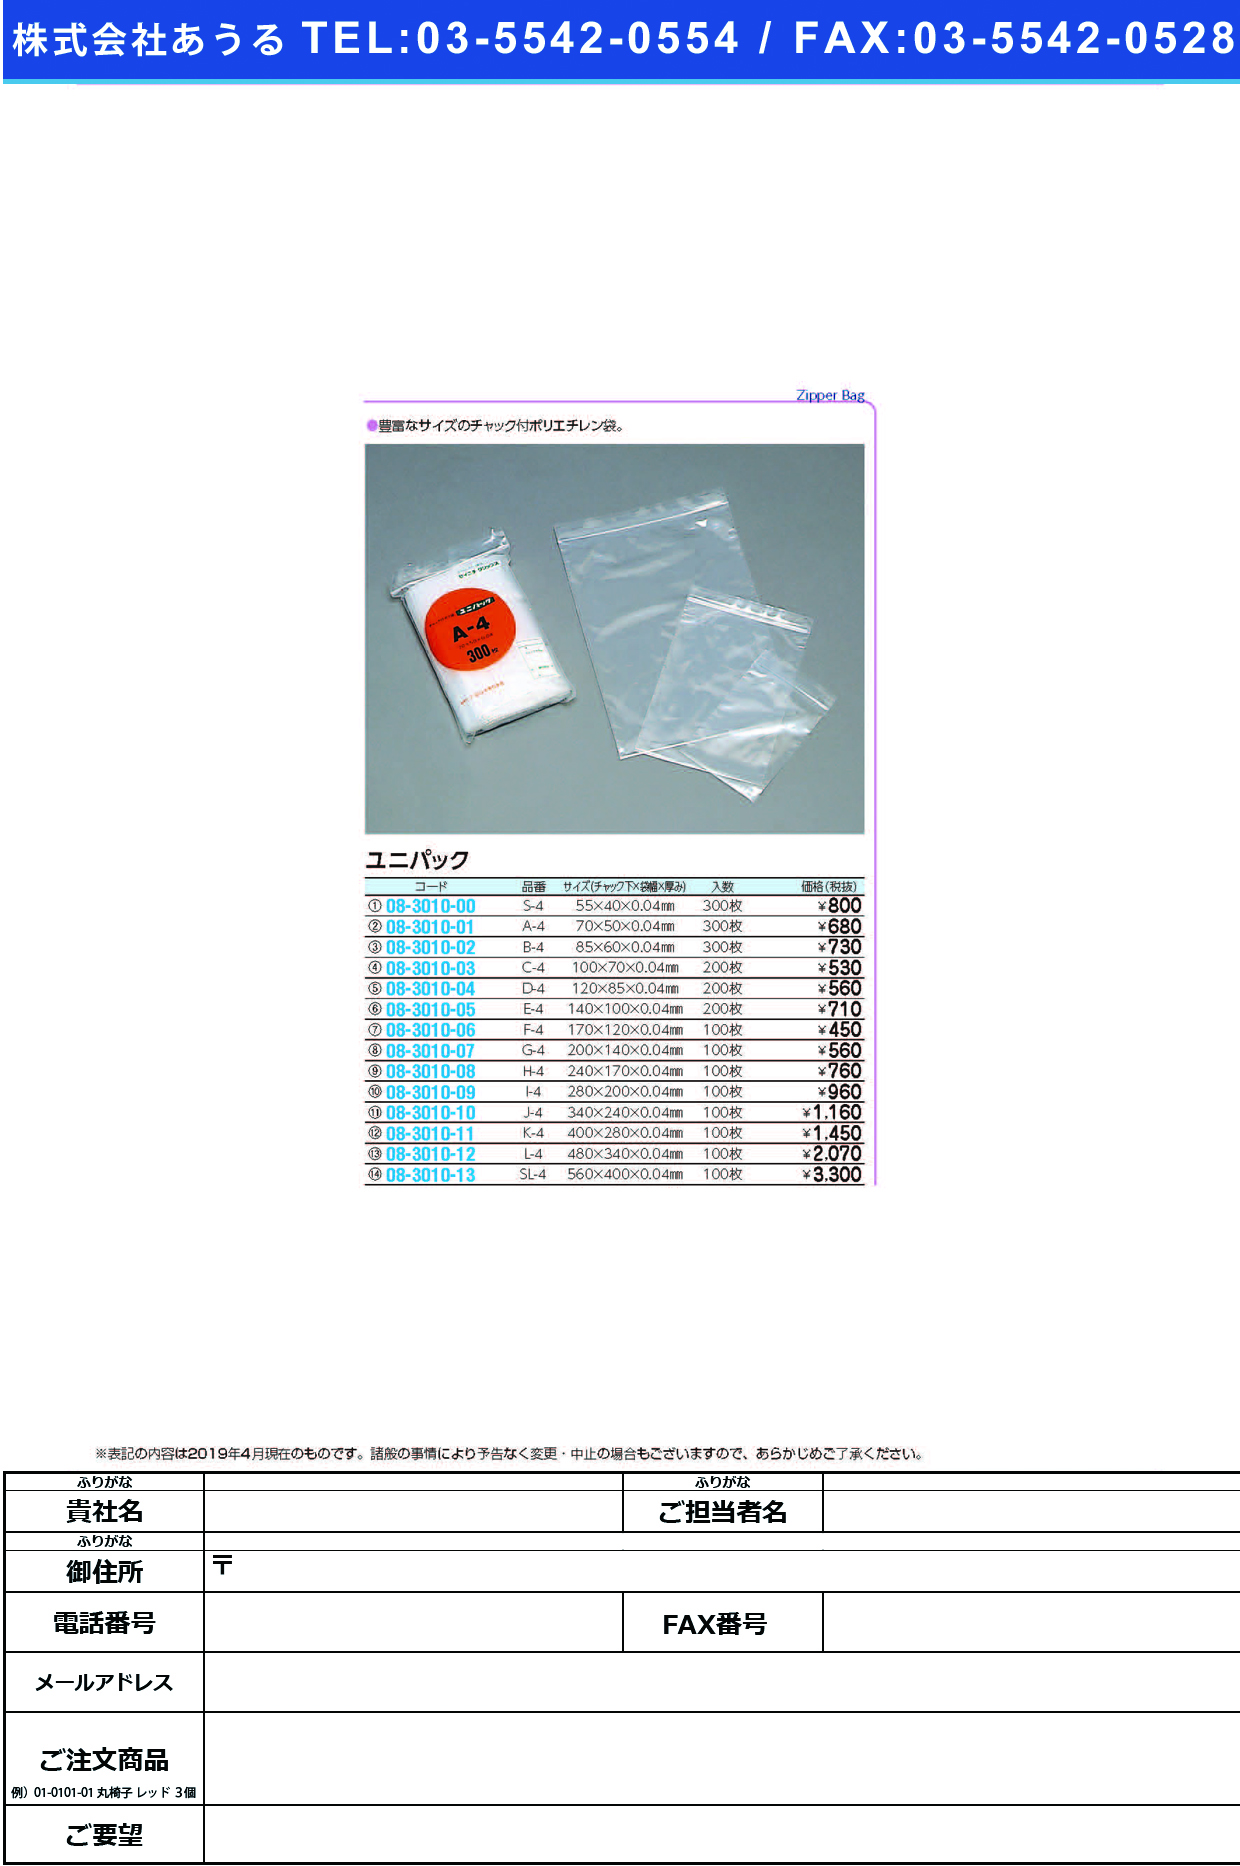 (08-3010-04)ユニパック D-4(120X85MM)200ﾏｲ ﾕﾆﾊﾟｯｸ【1袋単位】【2019年カタログ商品】